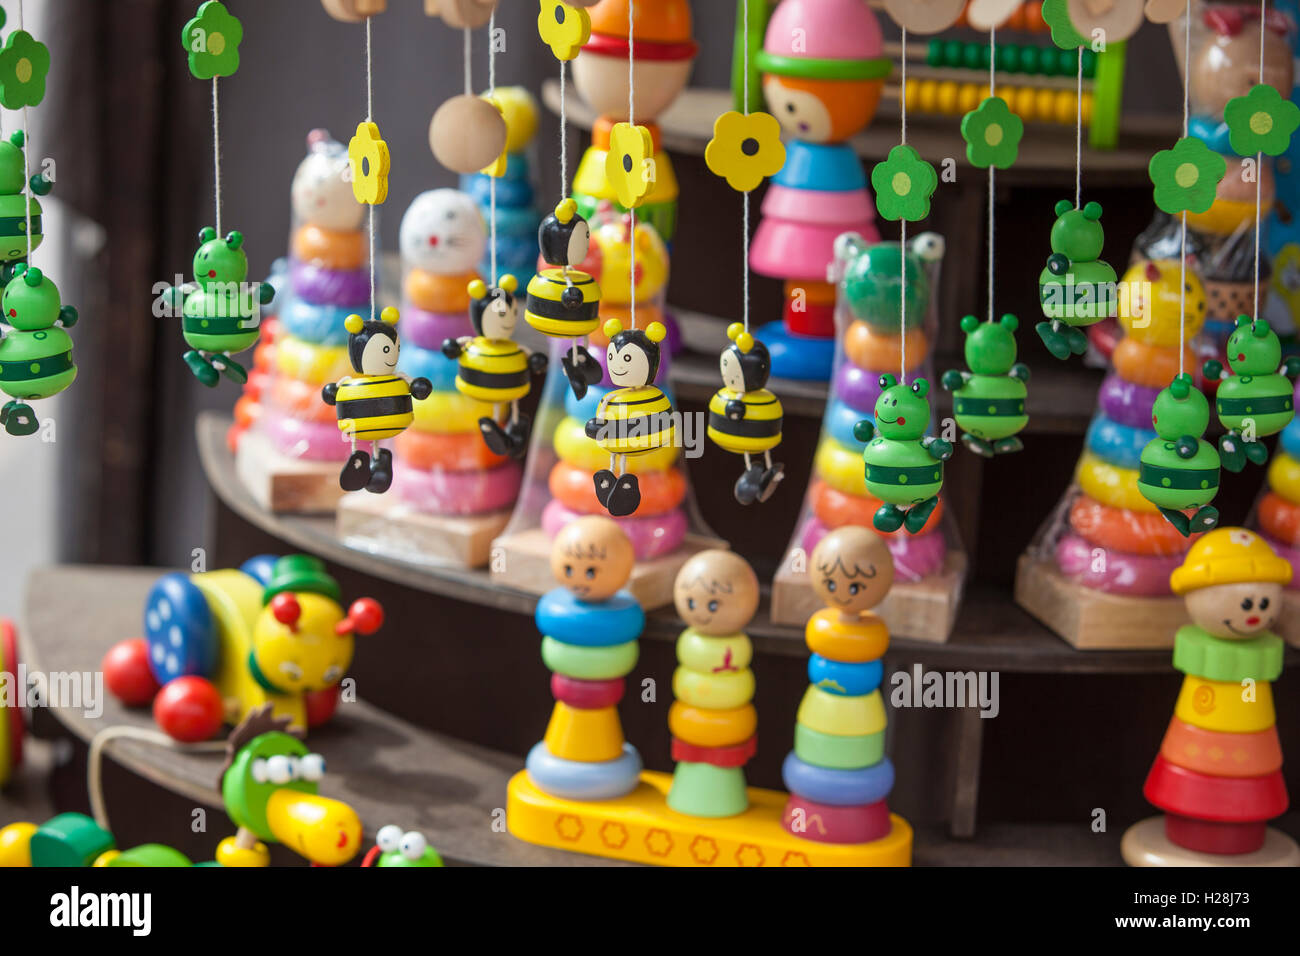 Street market stall pleine de jouets en bois faits à la main Banque D'Images